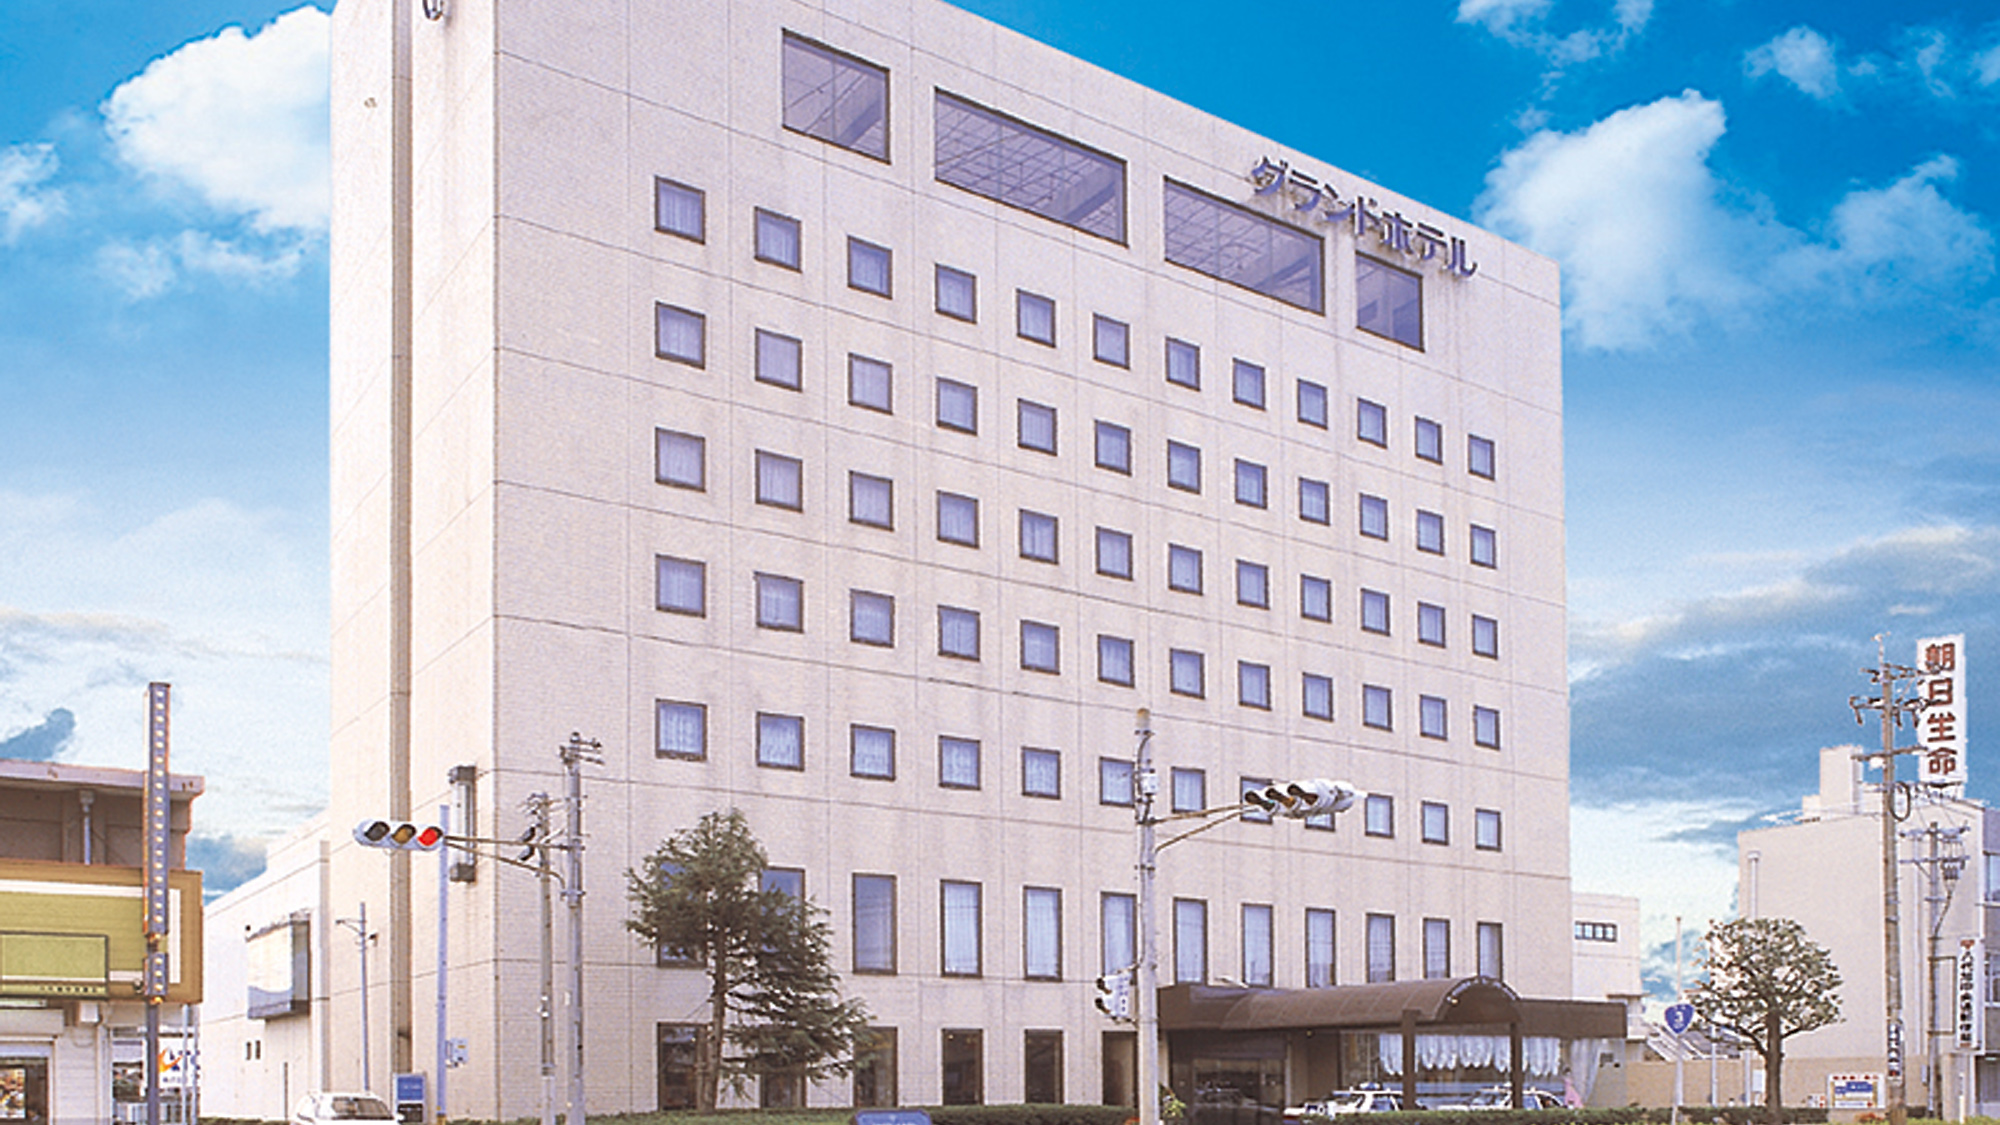 【出張】熊本の八代でおすすめの格安ビジネスホテル